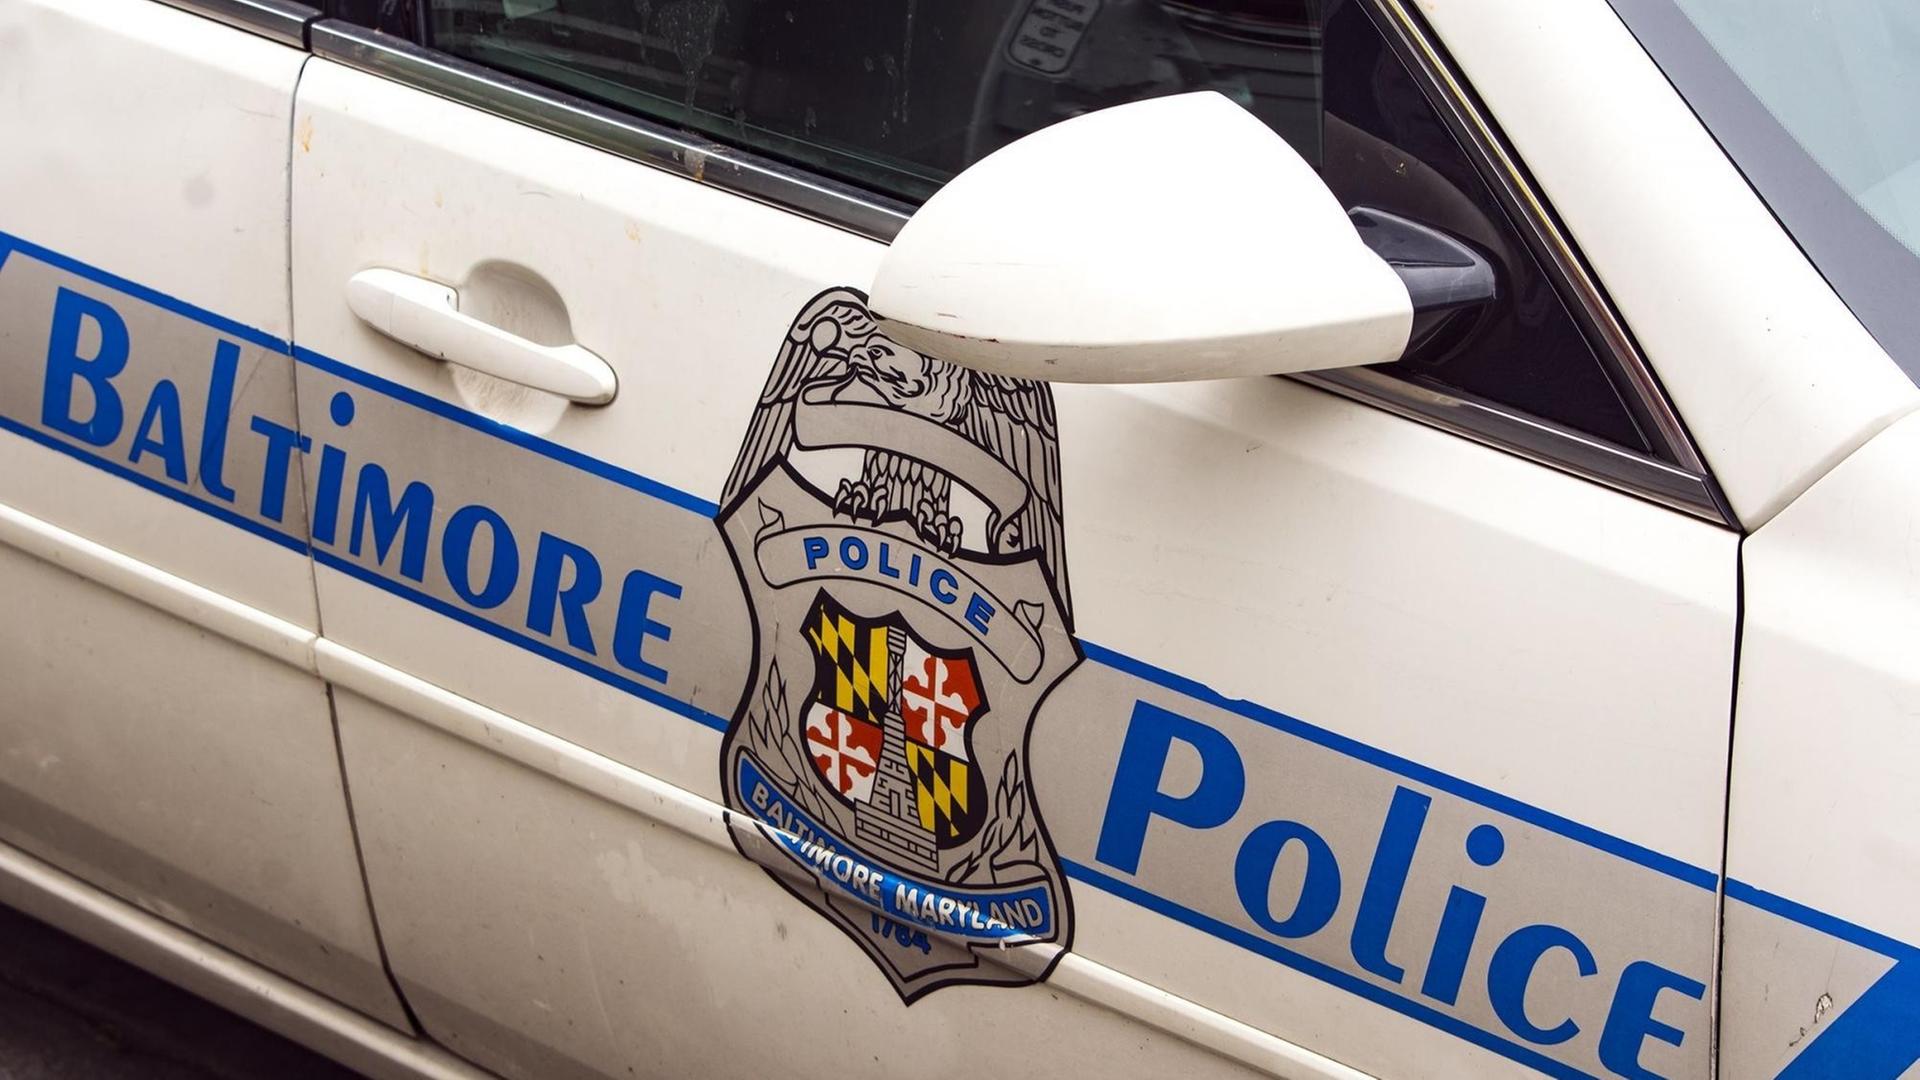 Das Bild zeigt die Tür eines weißen Polizei-Fahrzeugs. Auf dem Aufdruck steht "Baltimore Police", in der Mitte sieht man das Polizeiwappen.